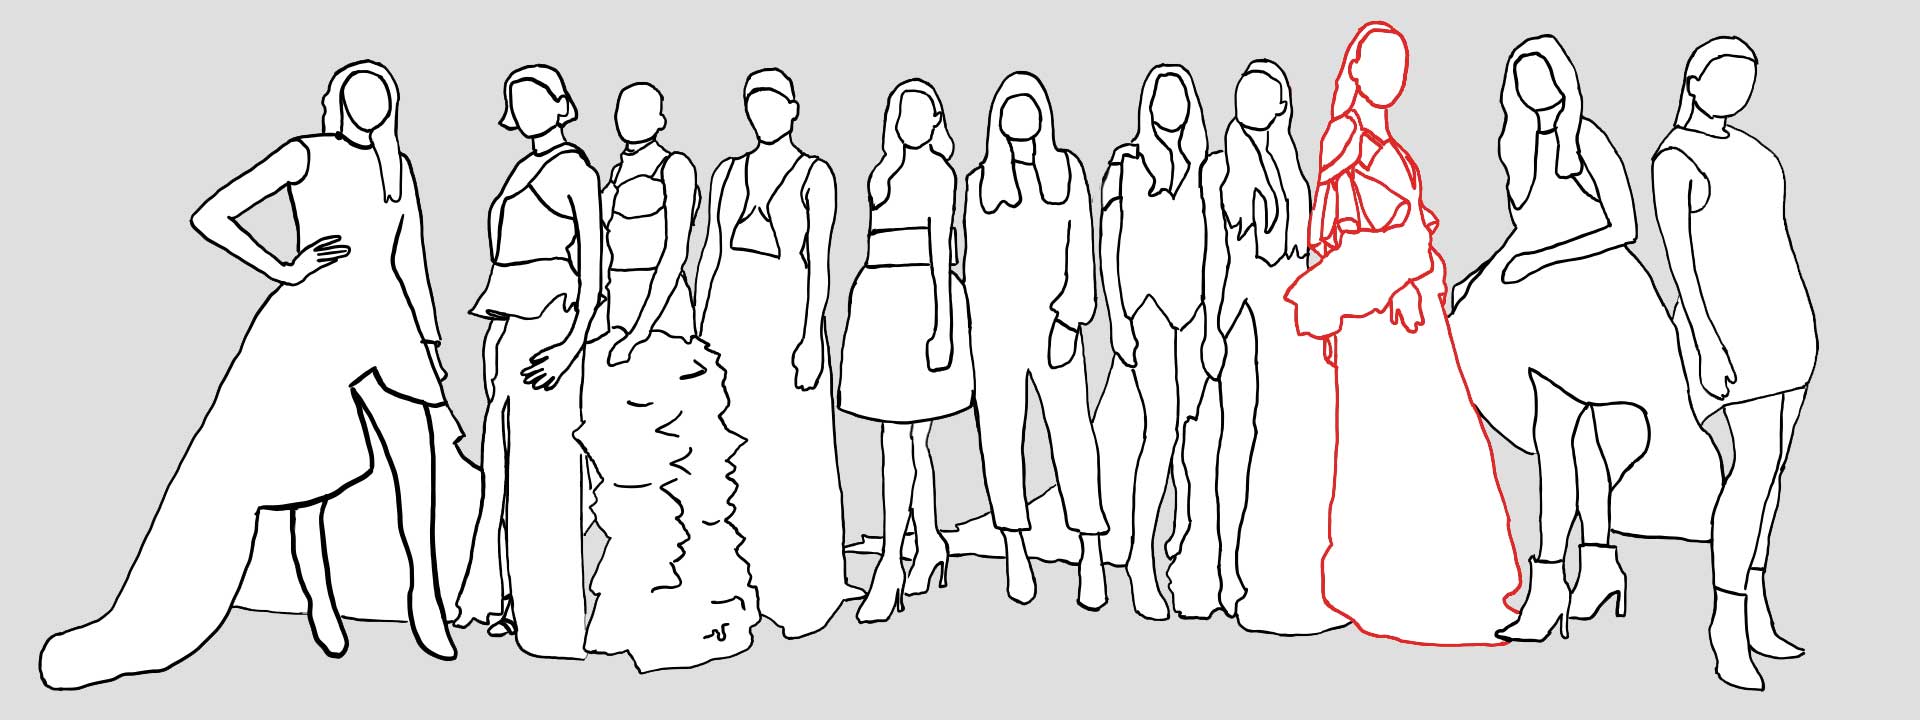 Zeichnung: 11 Silhouetten von Models in modischen Kleidern, die nebeneinander stehend posieren